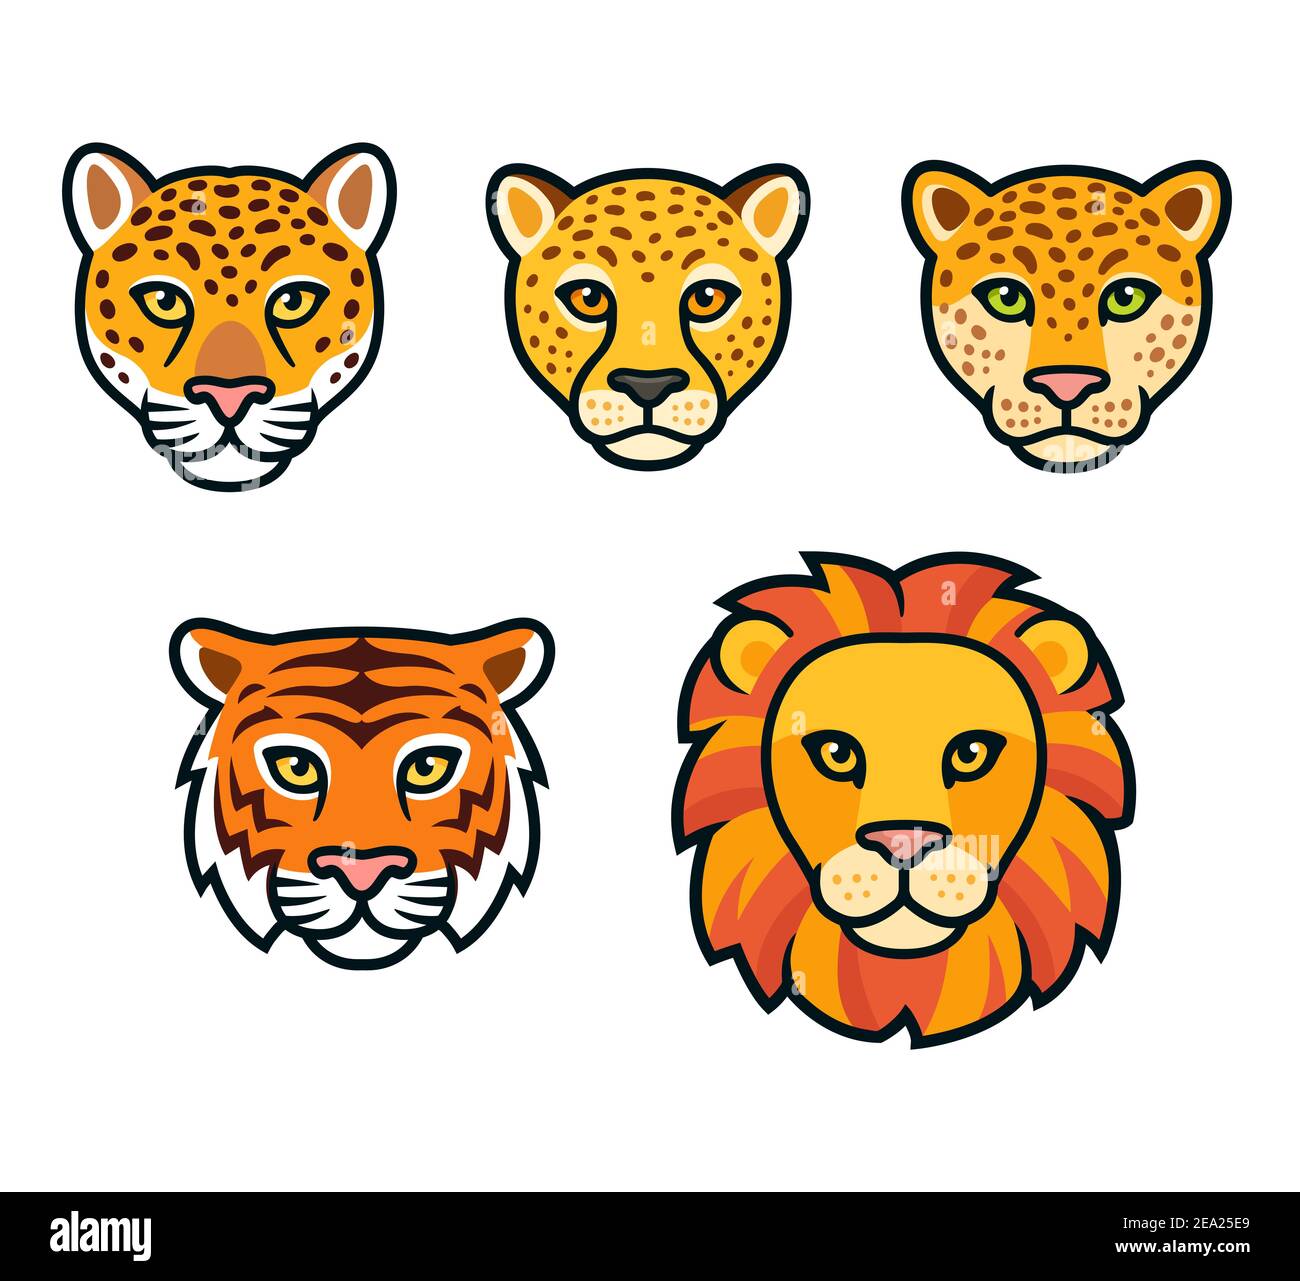 Große wilde Katzen Gesicht gesetzt. Löwe, Tiger, Leopard, jaguar, Gepardenköpfe. Cartoon Vektor Zeichnung, isolierte Vektor Clip Art Illustration. Stock Vektor